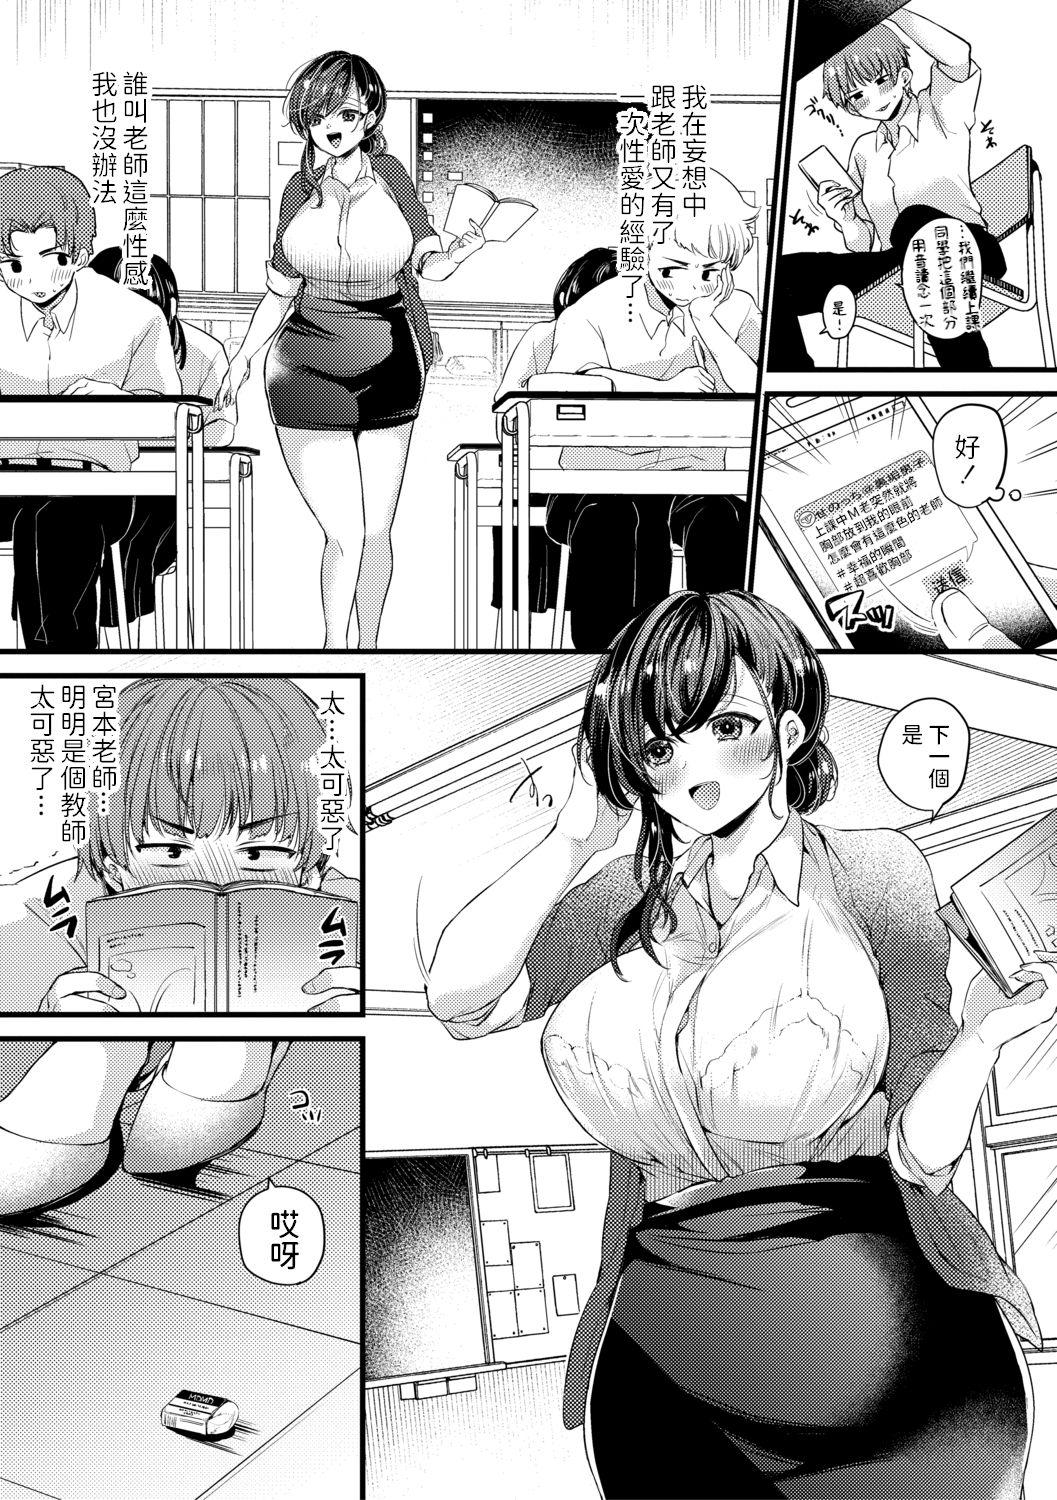 White Chick Genjitsu wa Uraaka yori Ecchi nari Chaturbate - Page 3